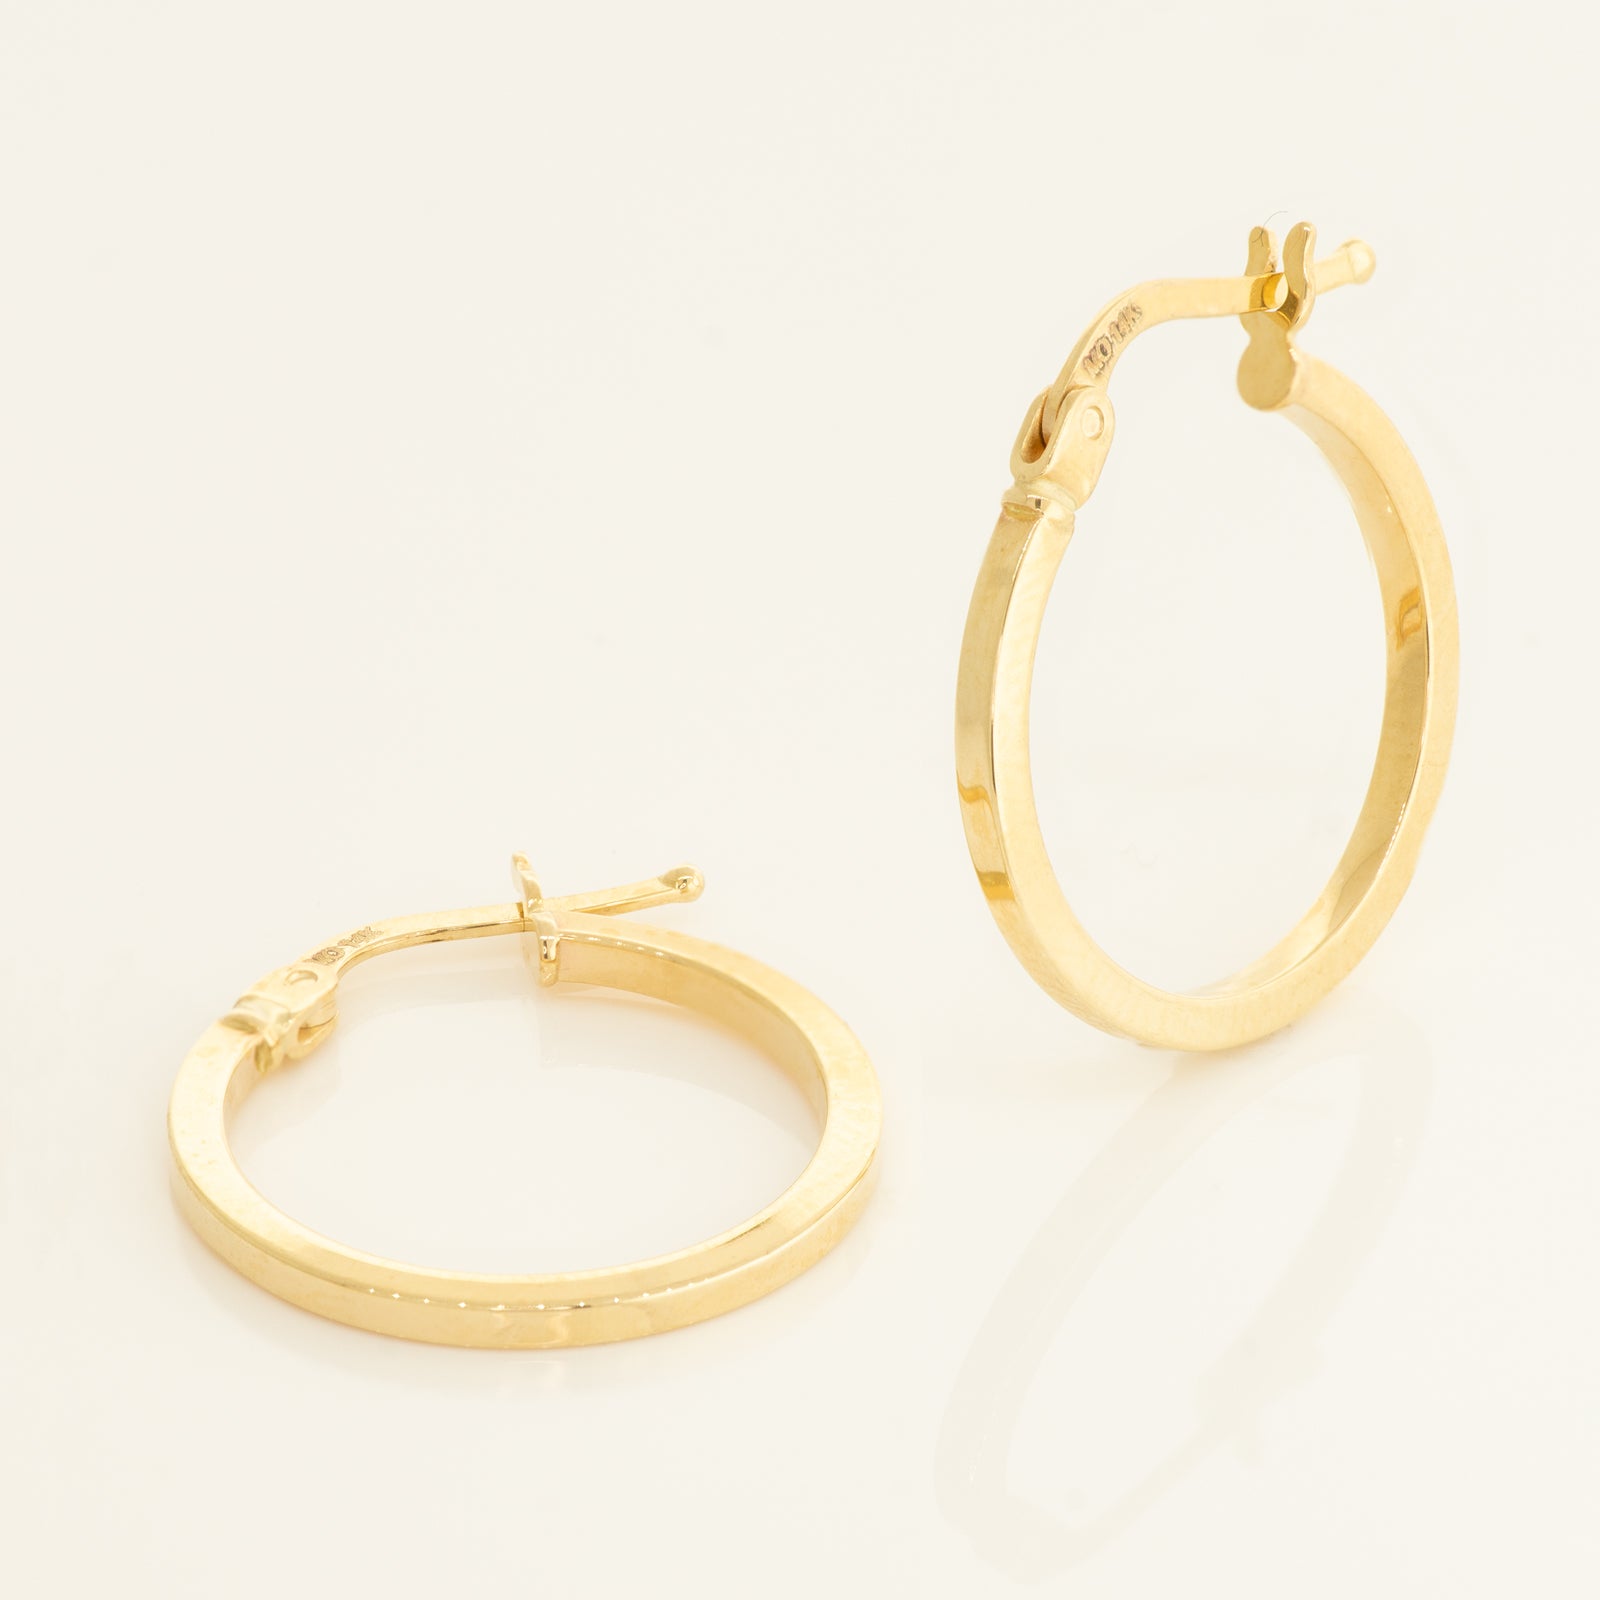 Buy 14K Solid Yellow Gold Hoop Earrings